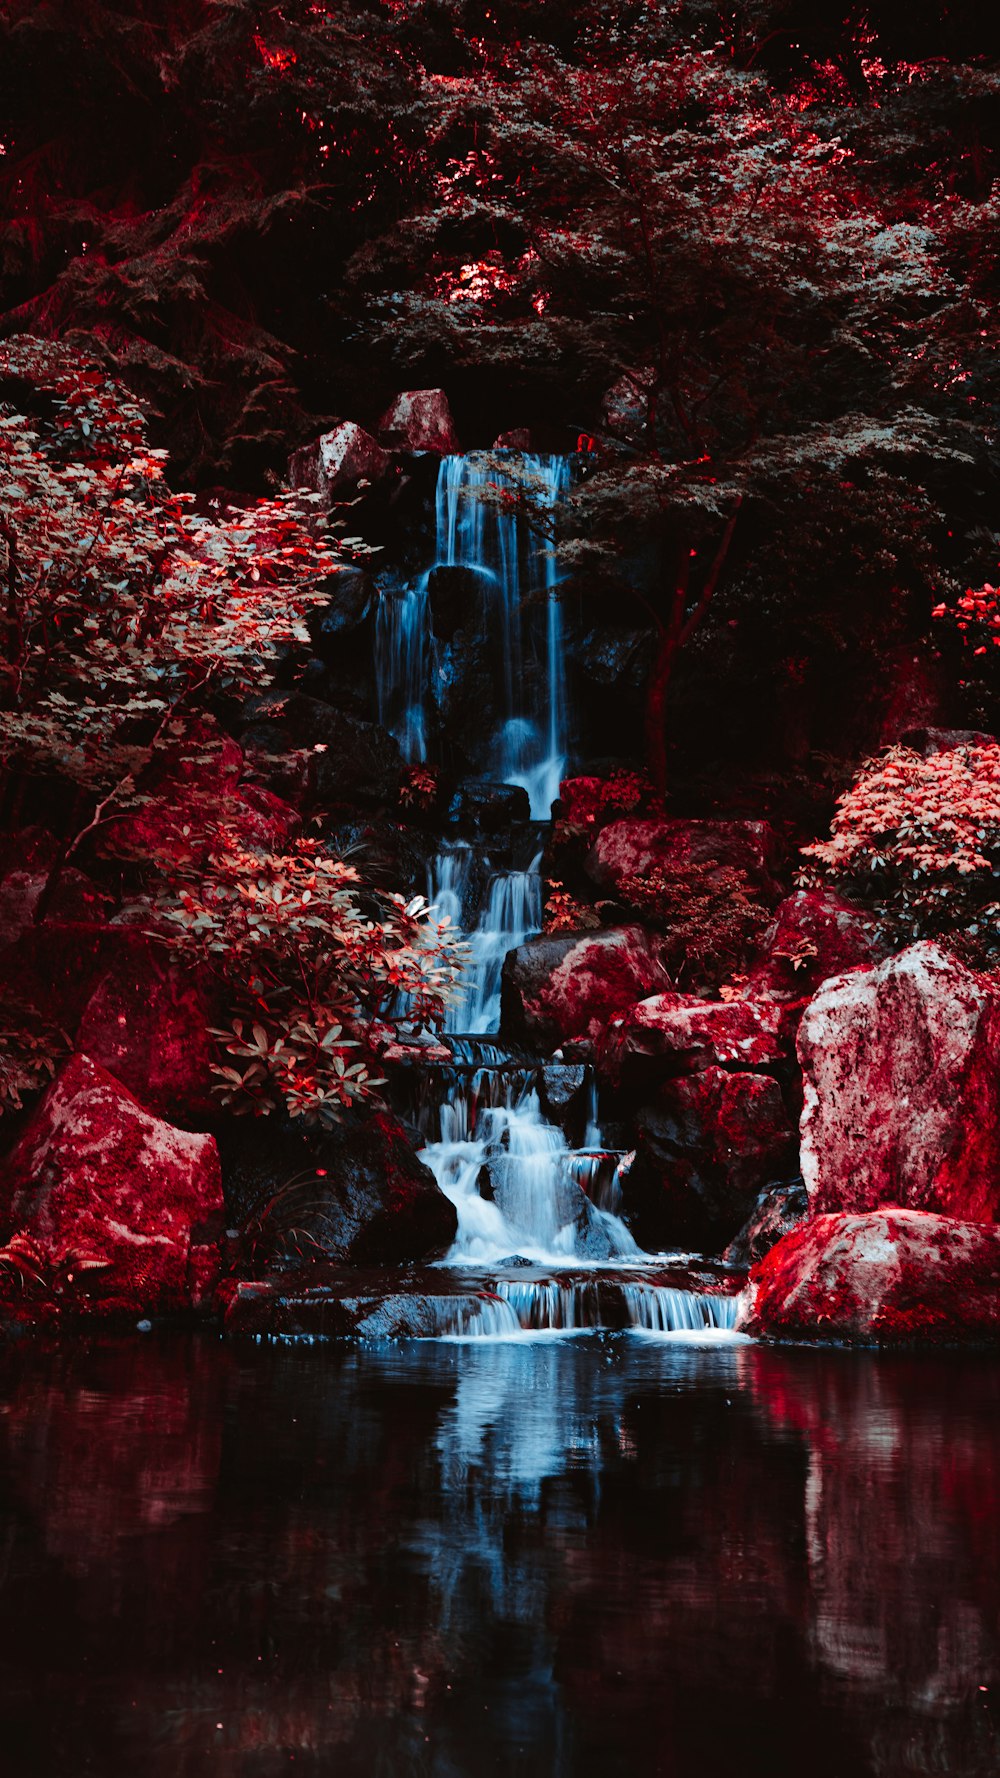 Una piccola cascata nel mezzo di una foresta